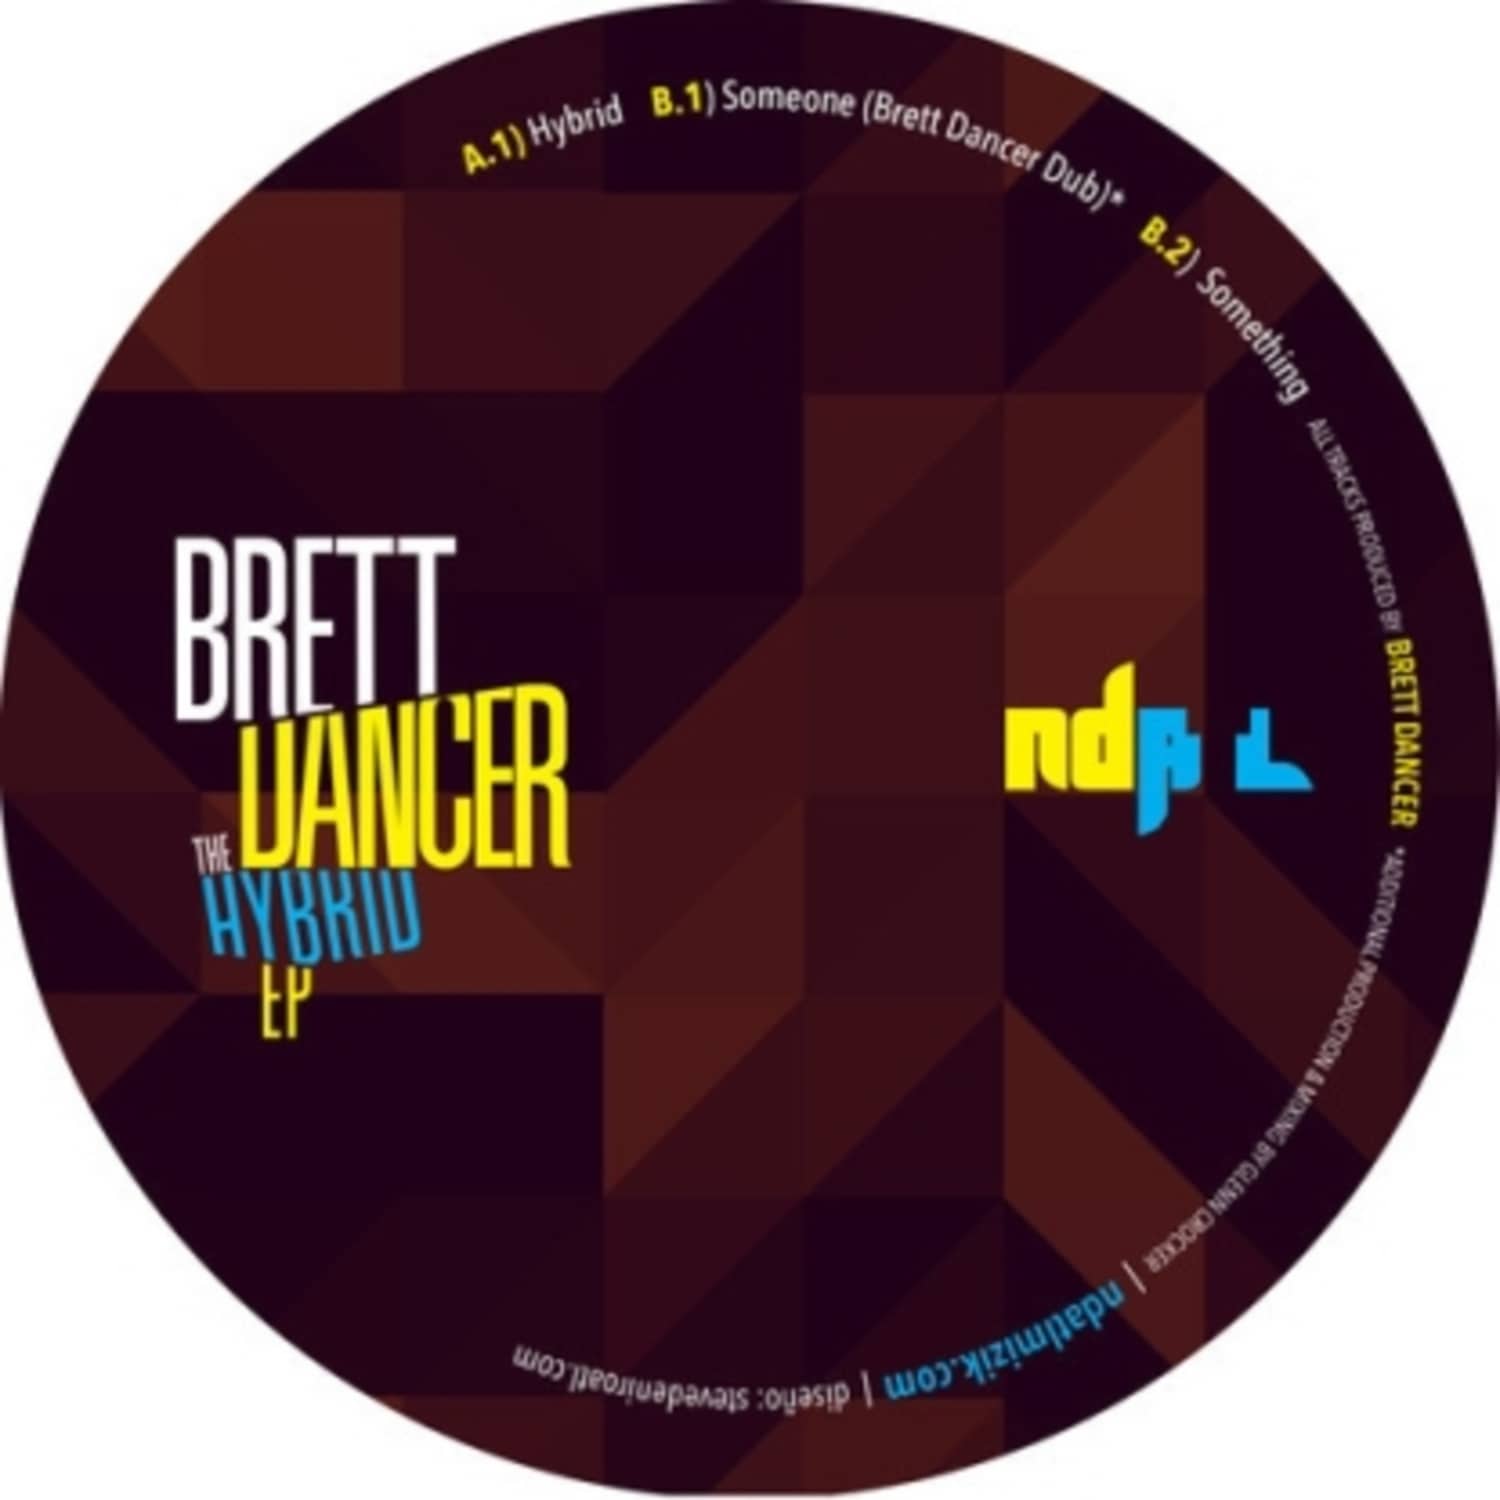 Brett Dancer - THE HYBRID EP